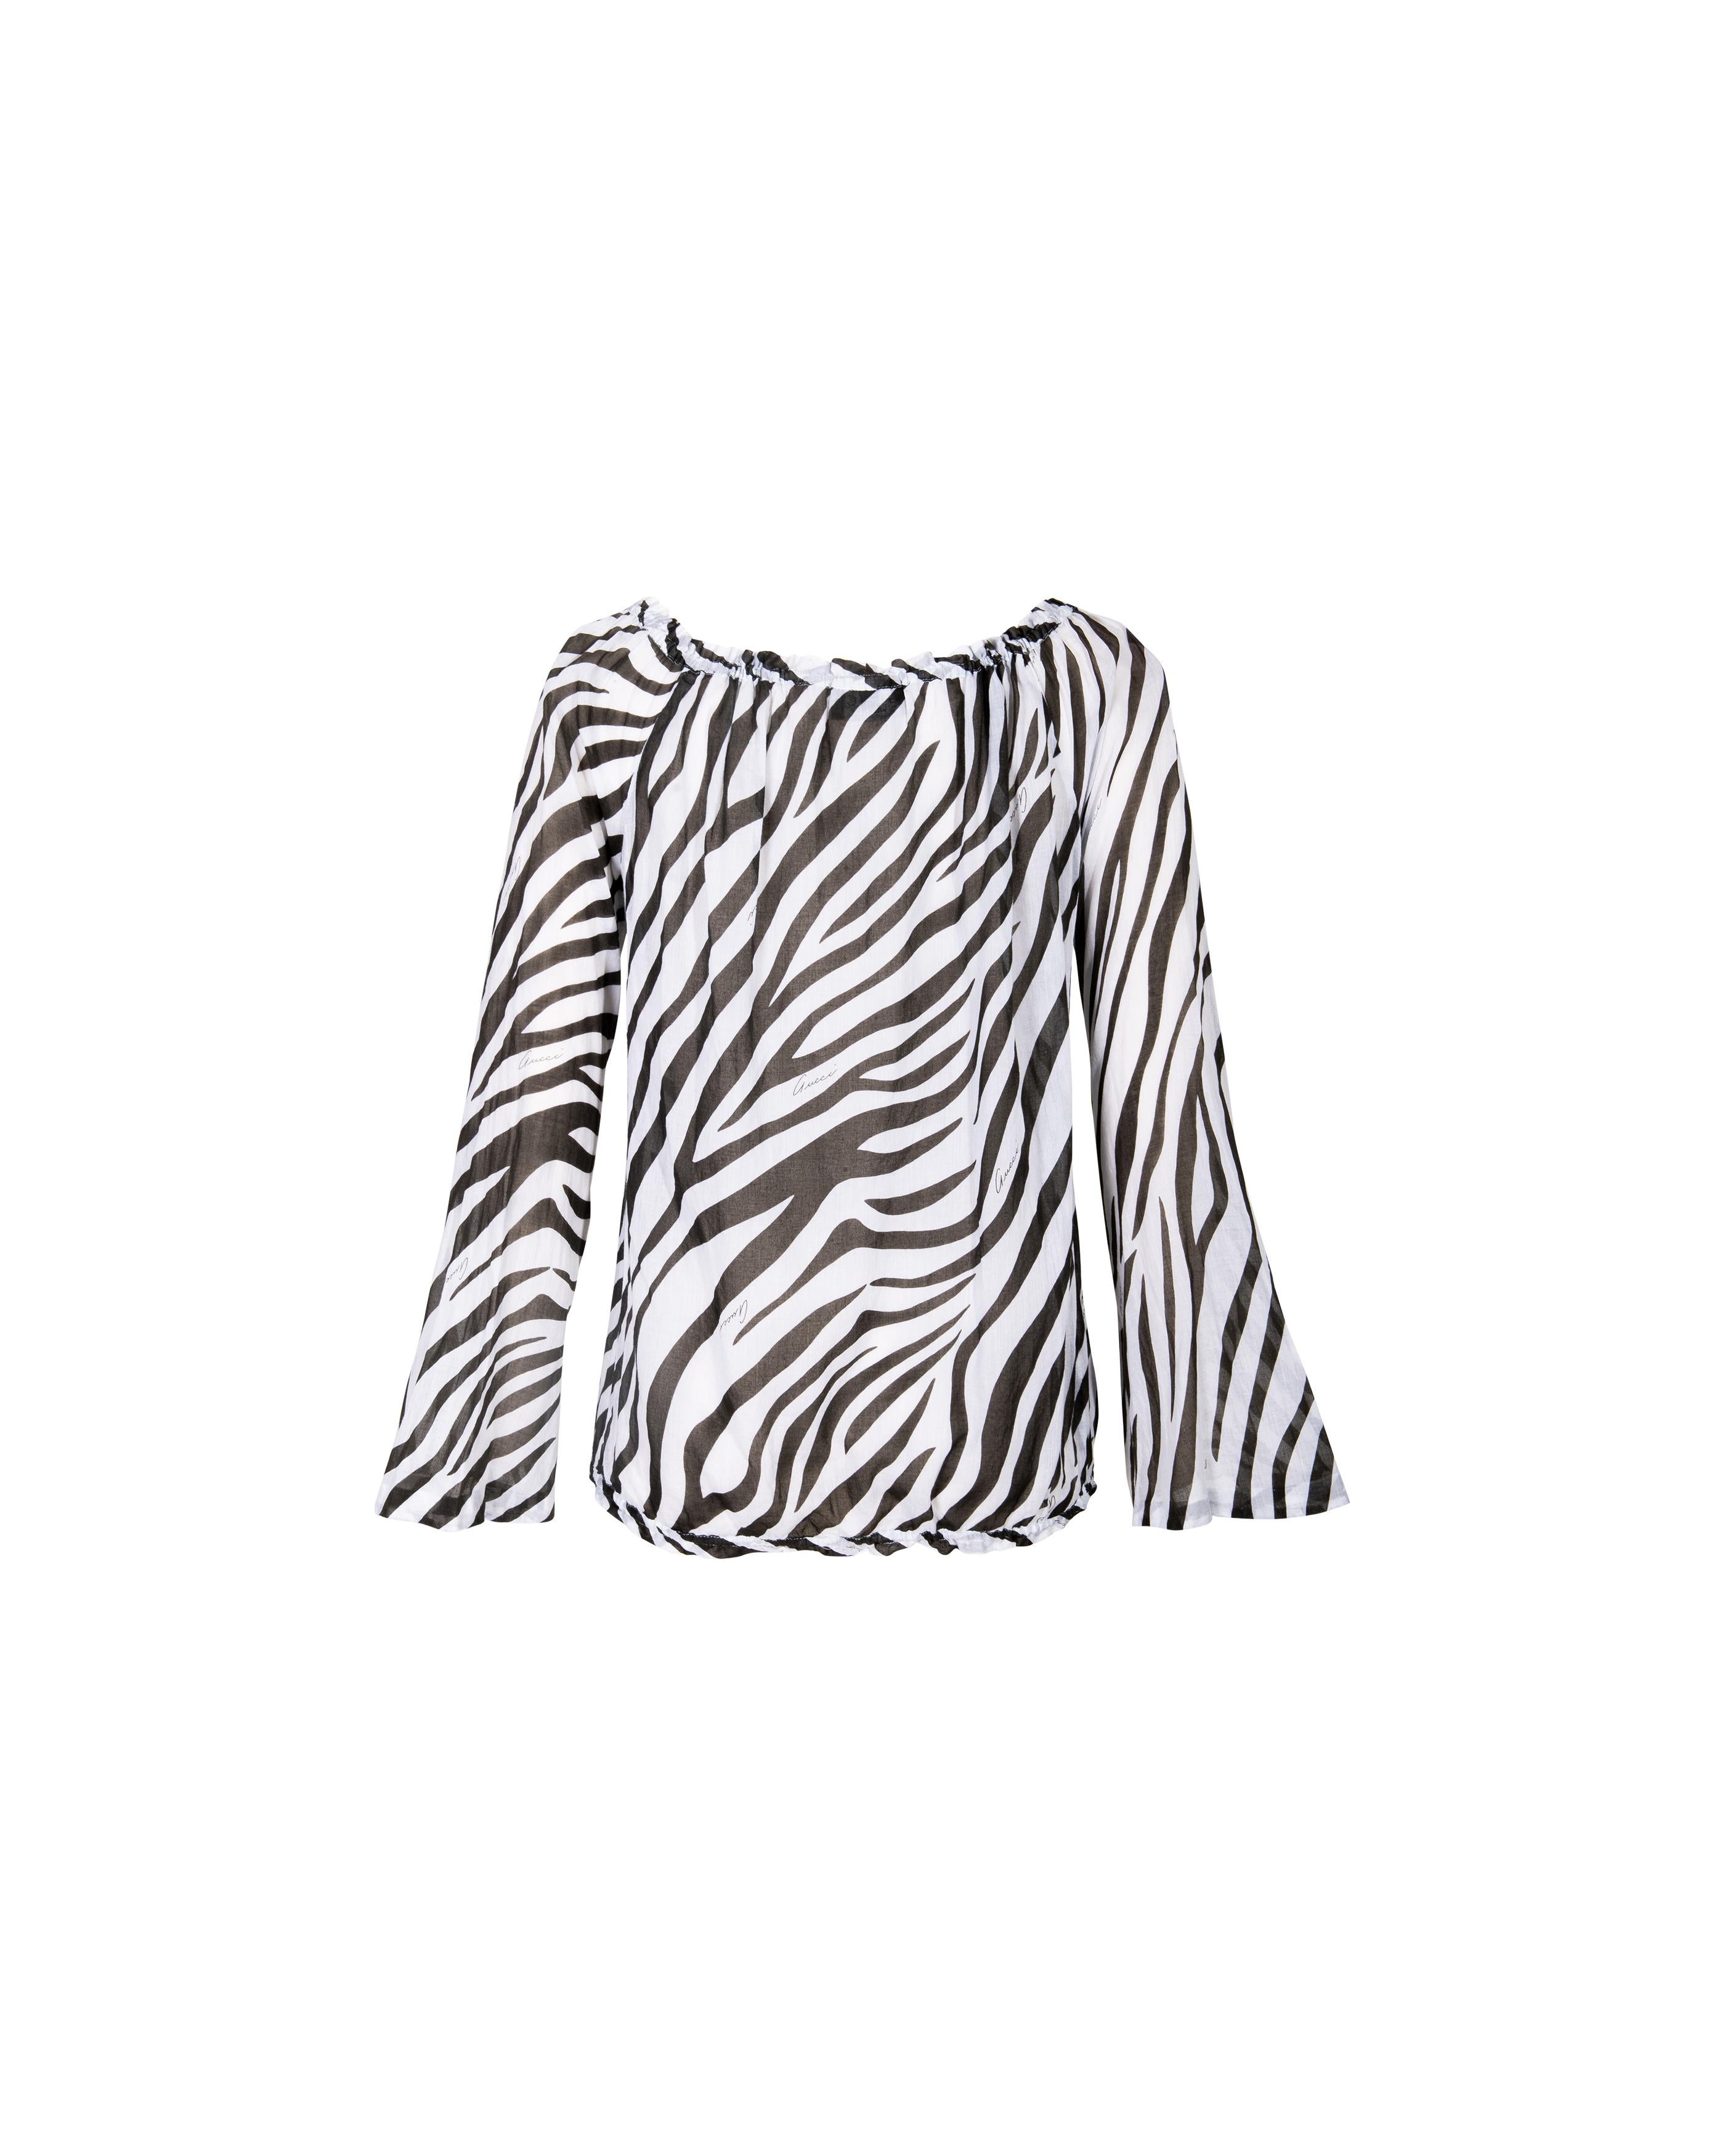 F/S 1996 Gucci by Tom Ford Schwarze und weiße Baumwollbluse mit Zebradruck 1